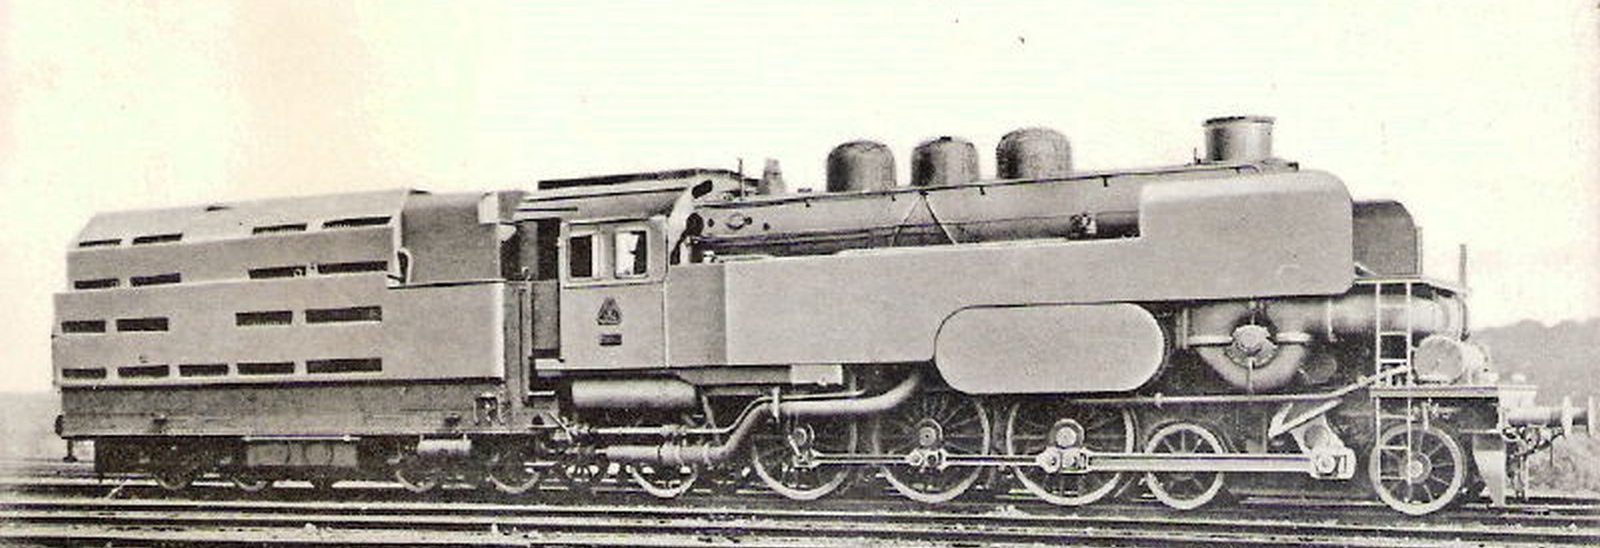 T 18 1001 built by Krupp